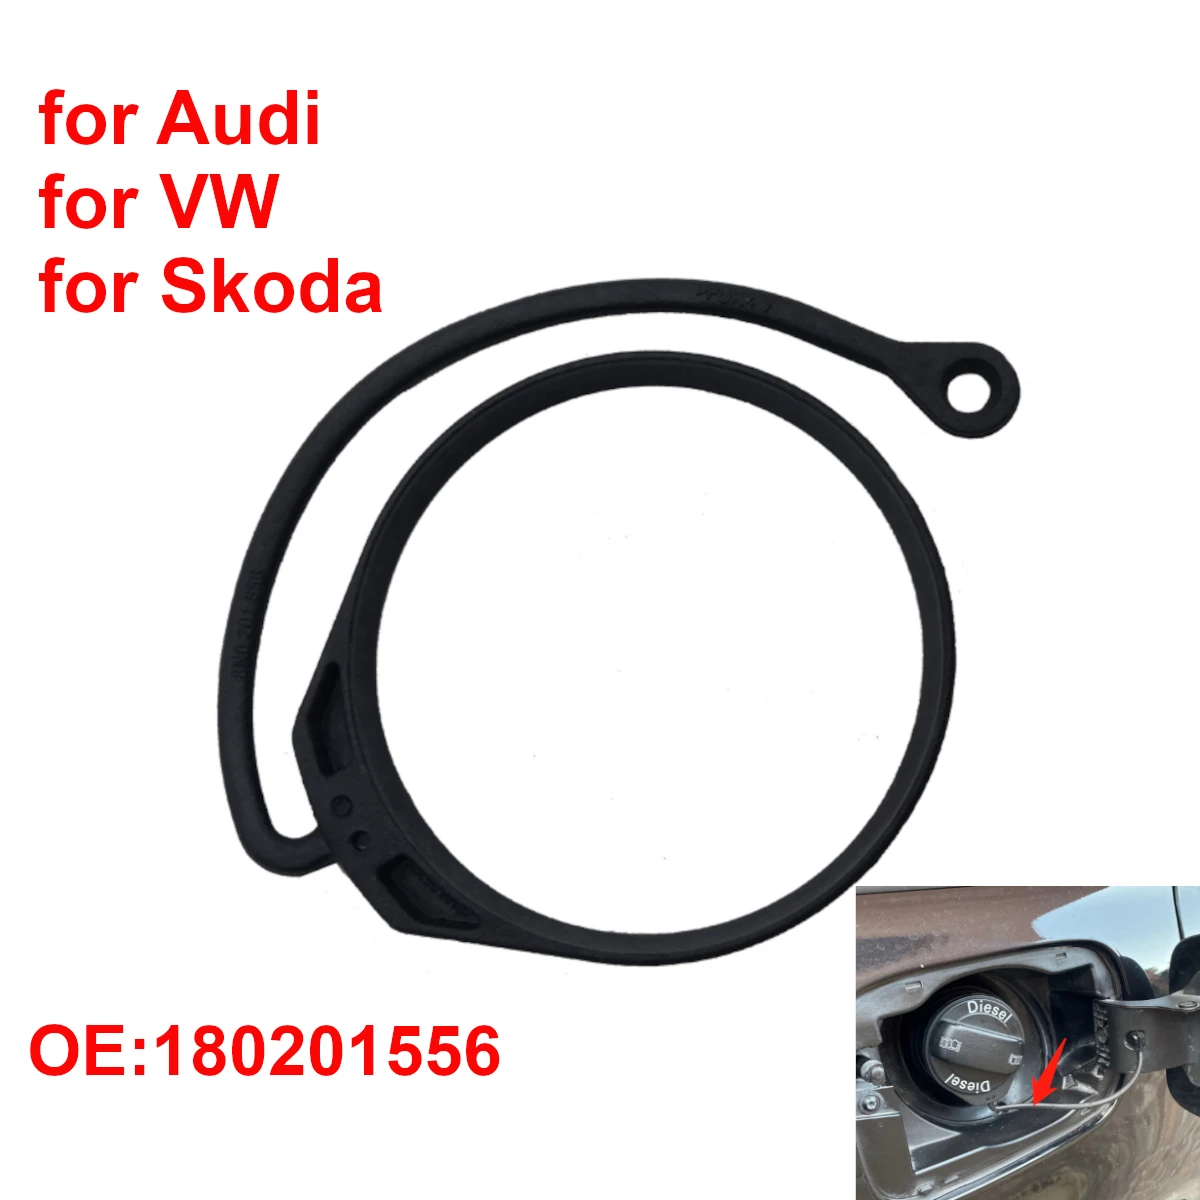 https://ae01.alicdn.com/kf/S484059df5a124d46b82e19e329dfb7ffp/Fuel-Tank-Cap-Band-Cord-for-Audi-A1-A3-A4-A5-A6-A7-A8-Q3-Q5.jpg